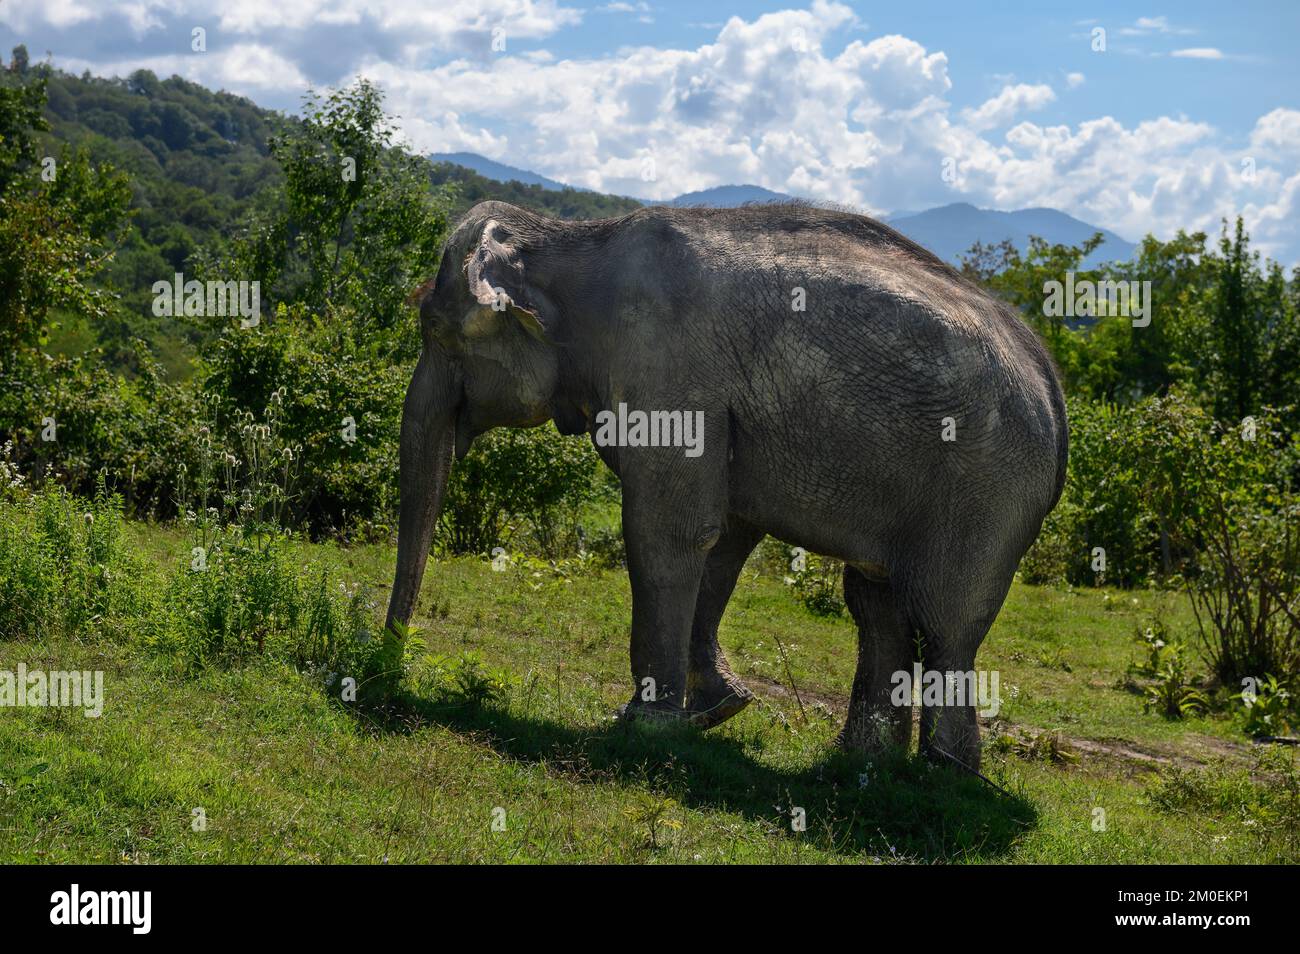 Asiatischer Elefant geht vor dem Hintergrund von Bergen und blauem Himmel auf grünem Gras. Stockfoto